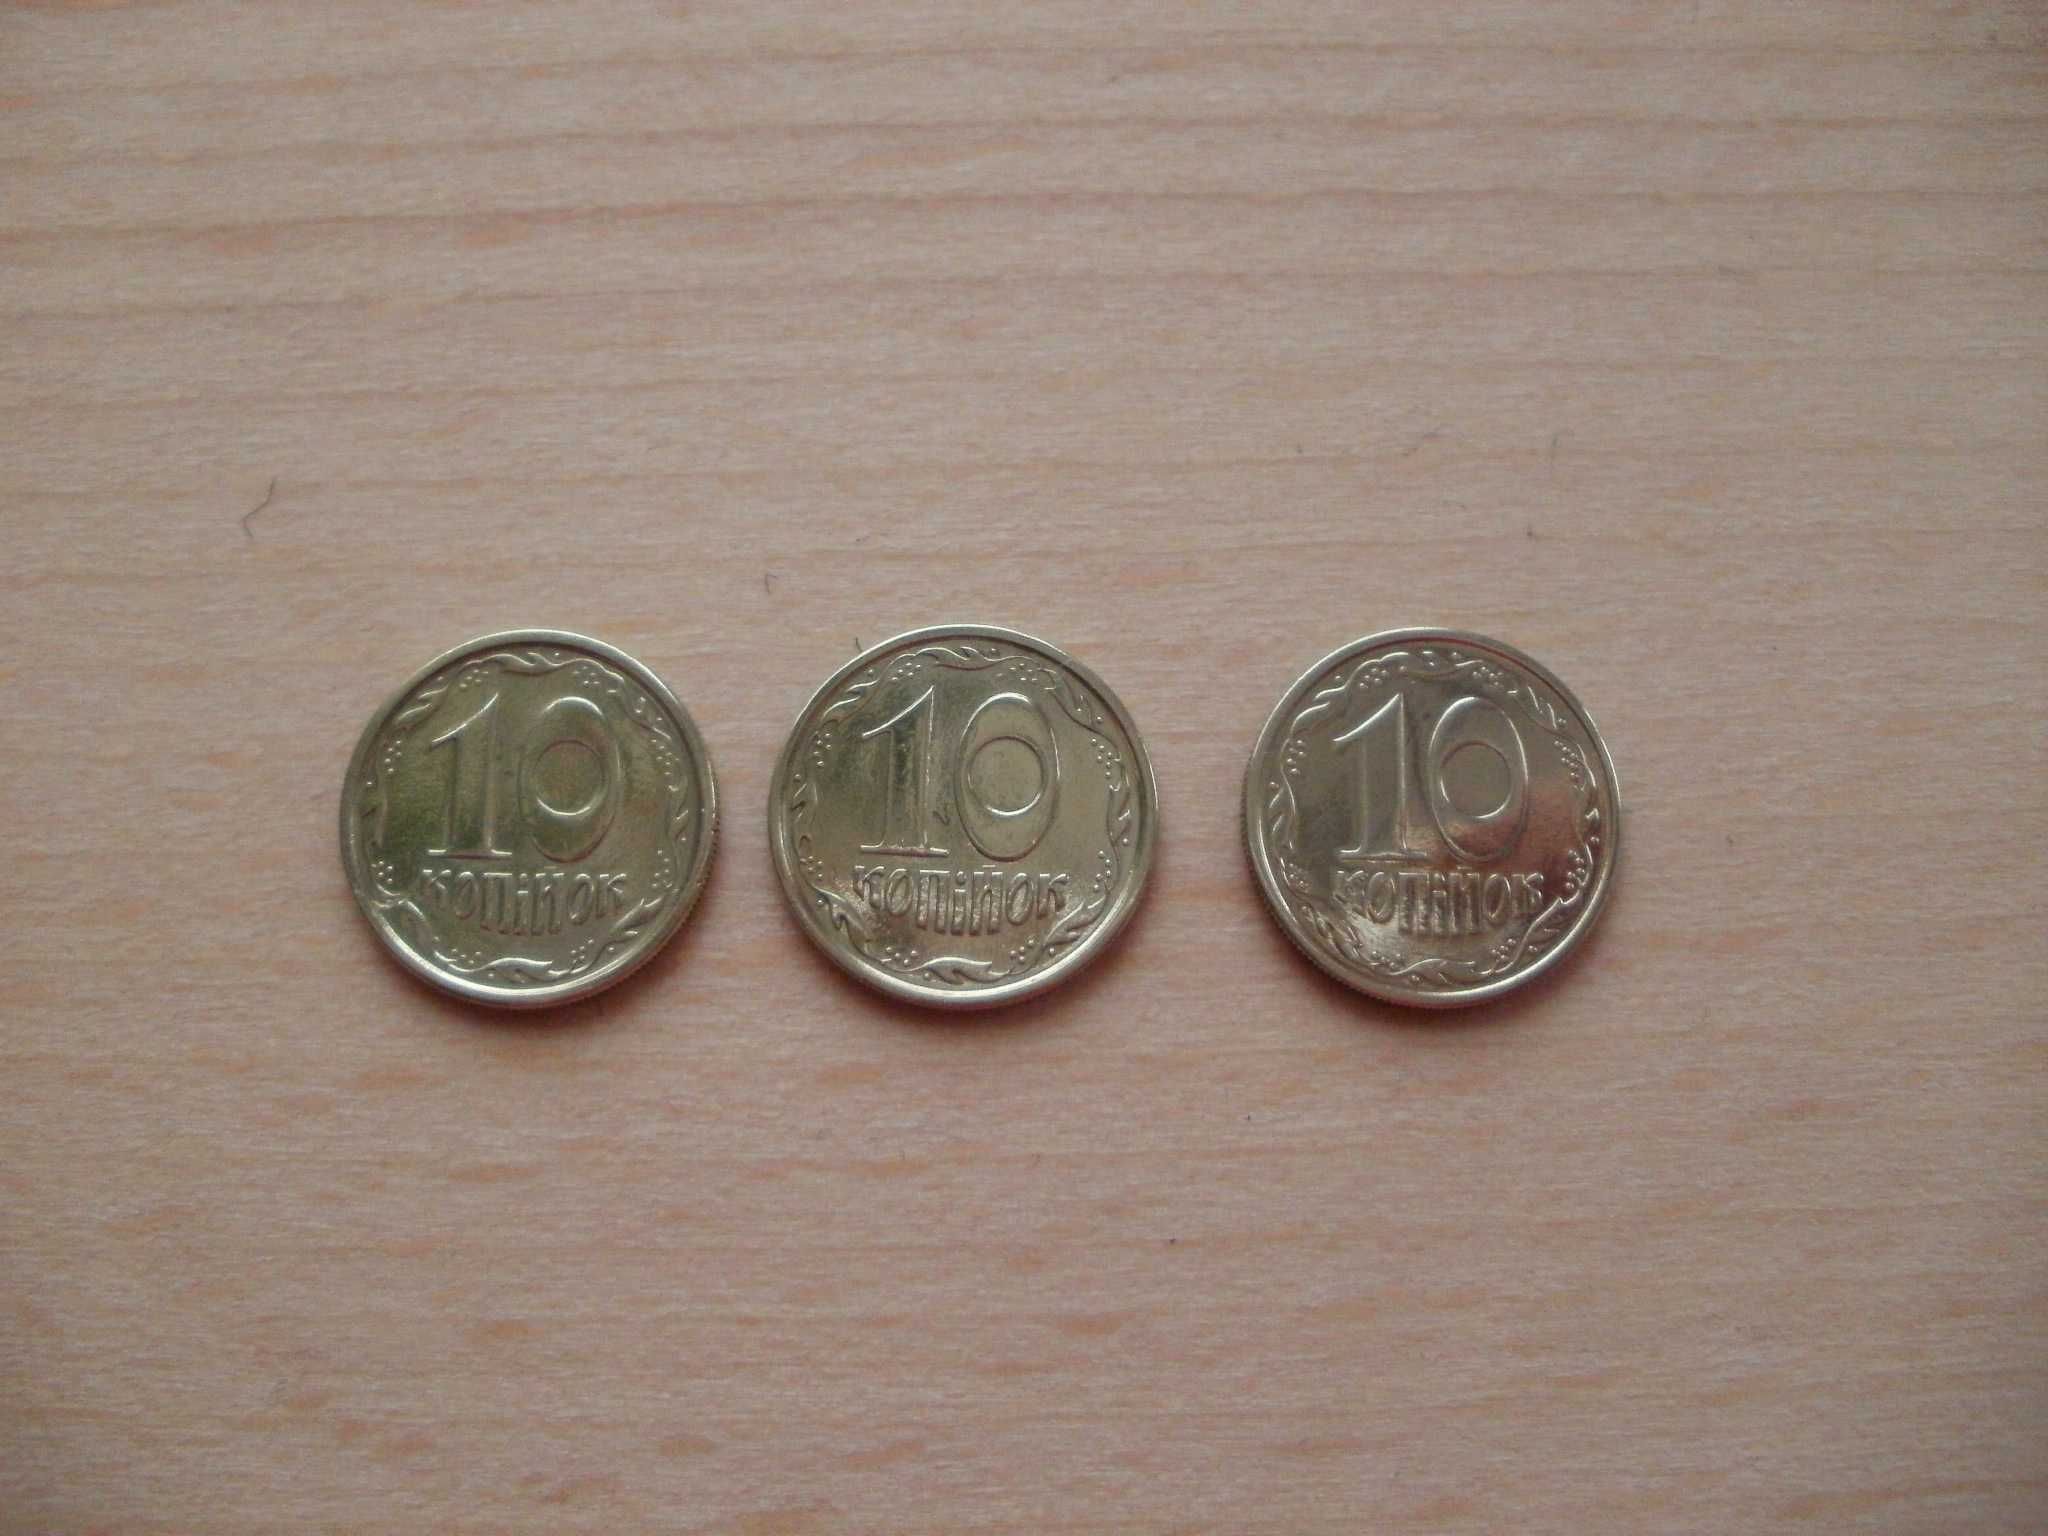 Обиходные монеты  Украины разные.